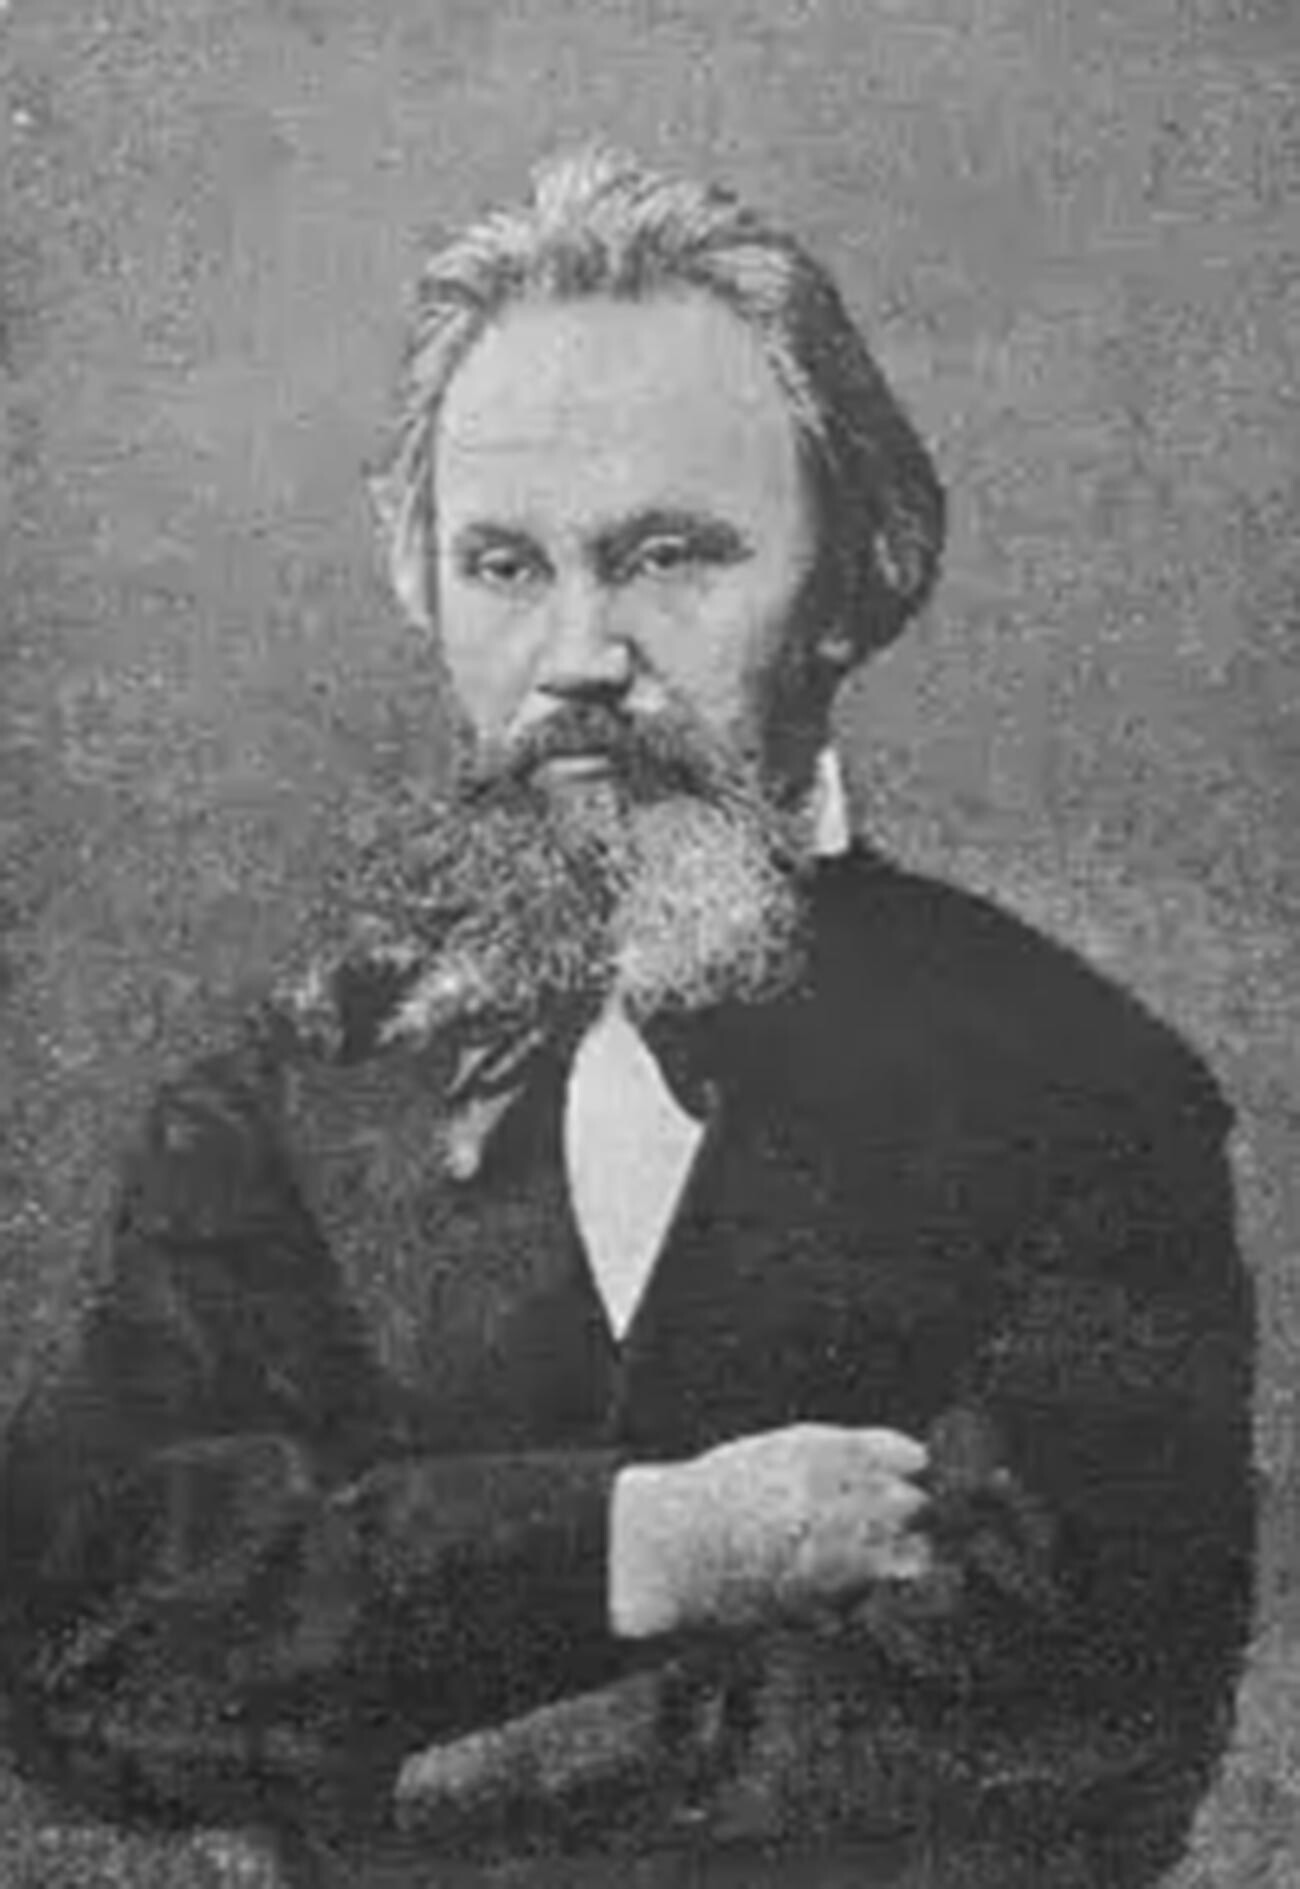 ウラジーミル・フロロフの父、アレクサンドル・フロロフ